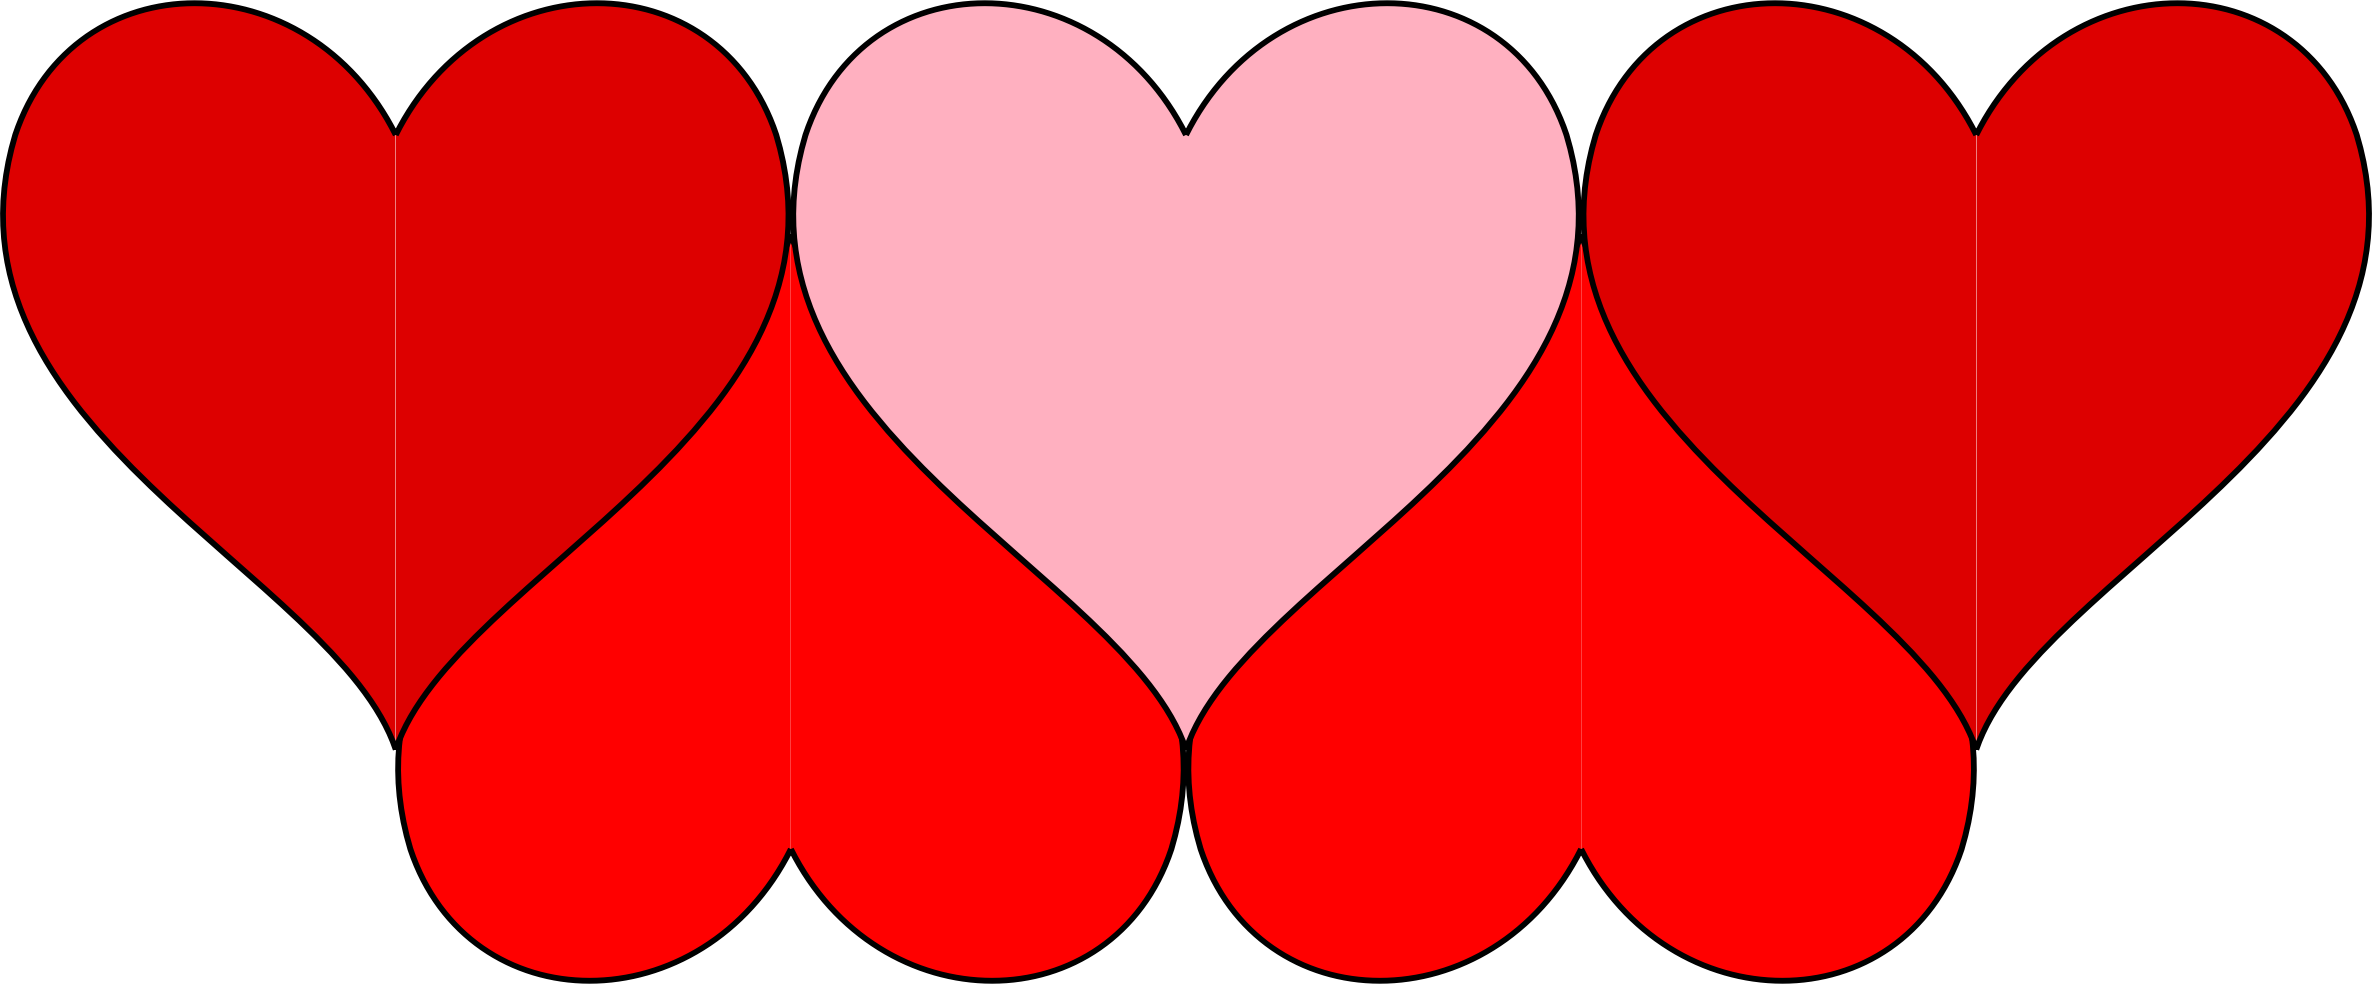 Hearts Doodle - Clip Art (2372x984)